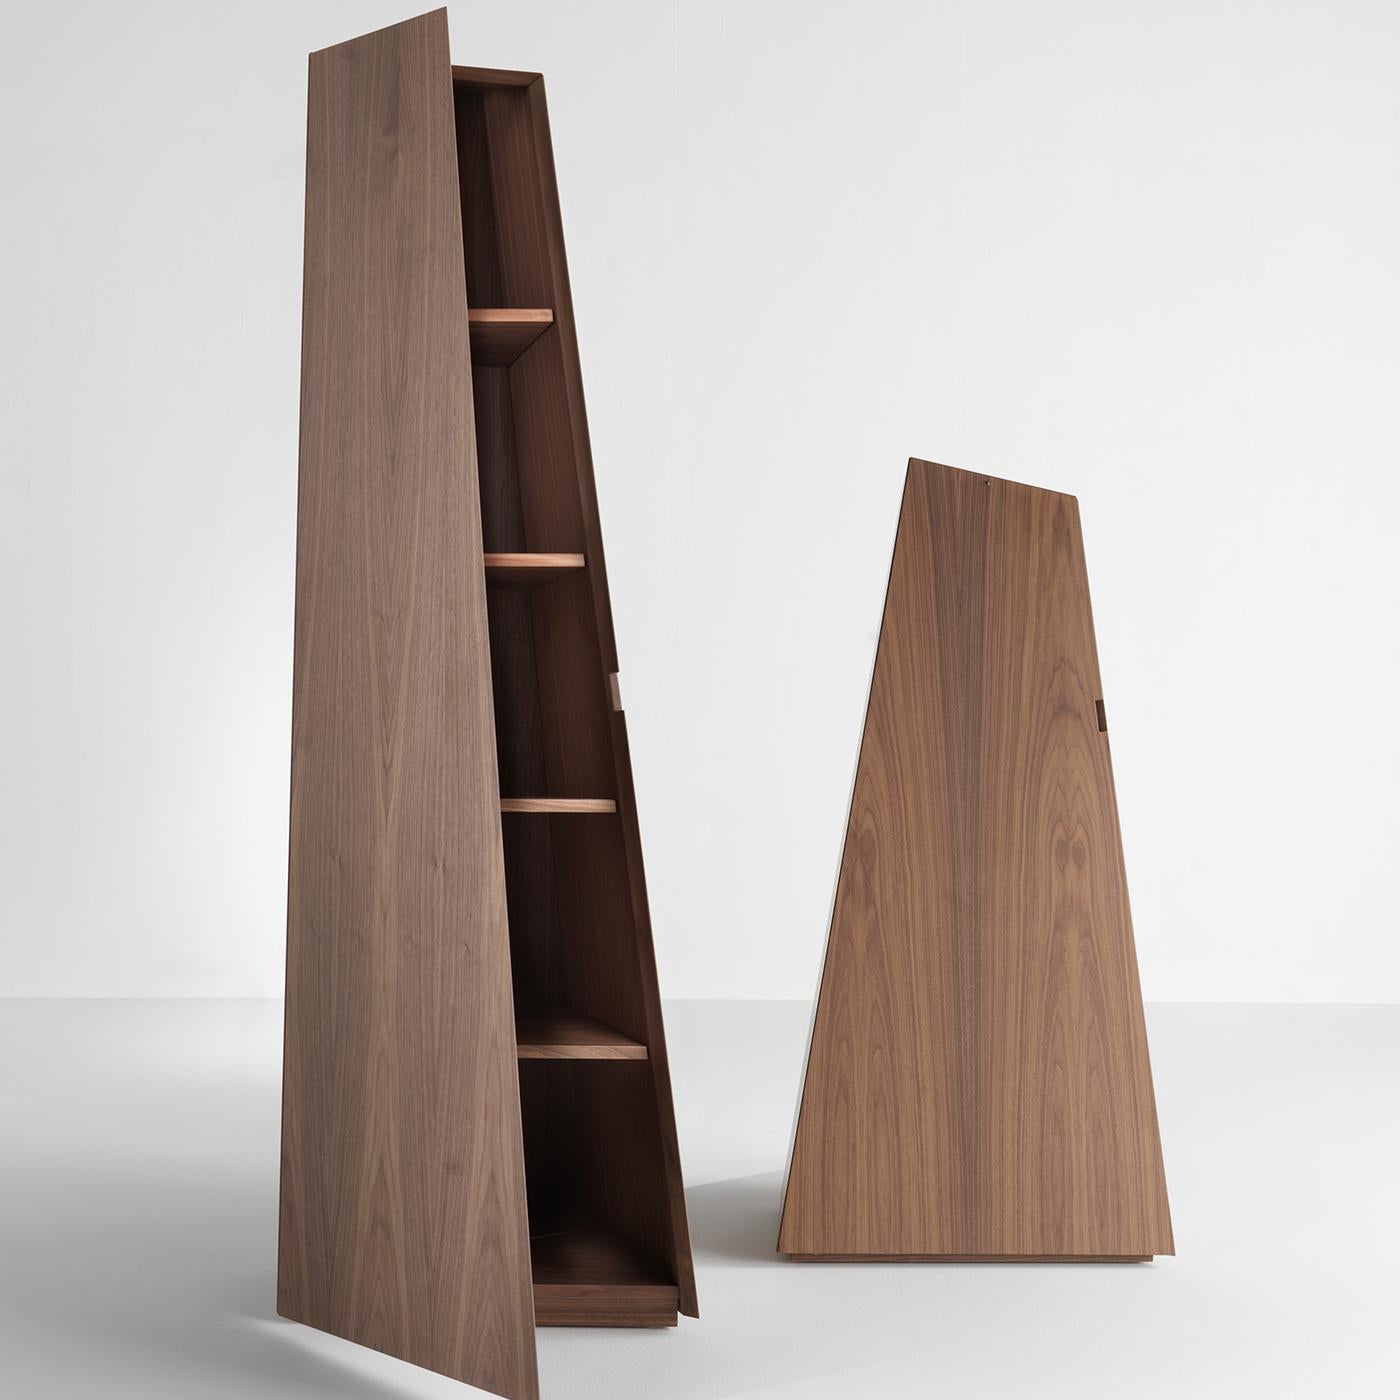 Diese Serie von drei Aufbewahrungsbehältern aus Holz in modernem Design ist ein Muss für jeden Liebhaber von modernem Design, das elegant und praktisch zugleich ist. Diese prismenförmigen Hochschränke öffnen sich dank einer Flügeltür zu praktischen